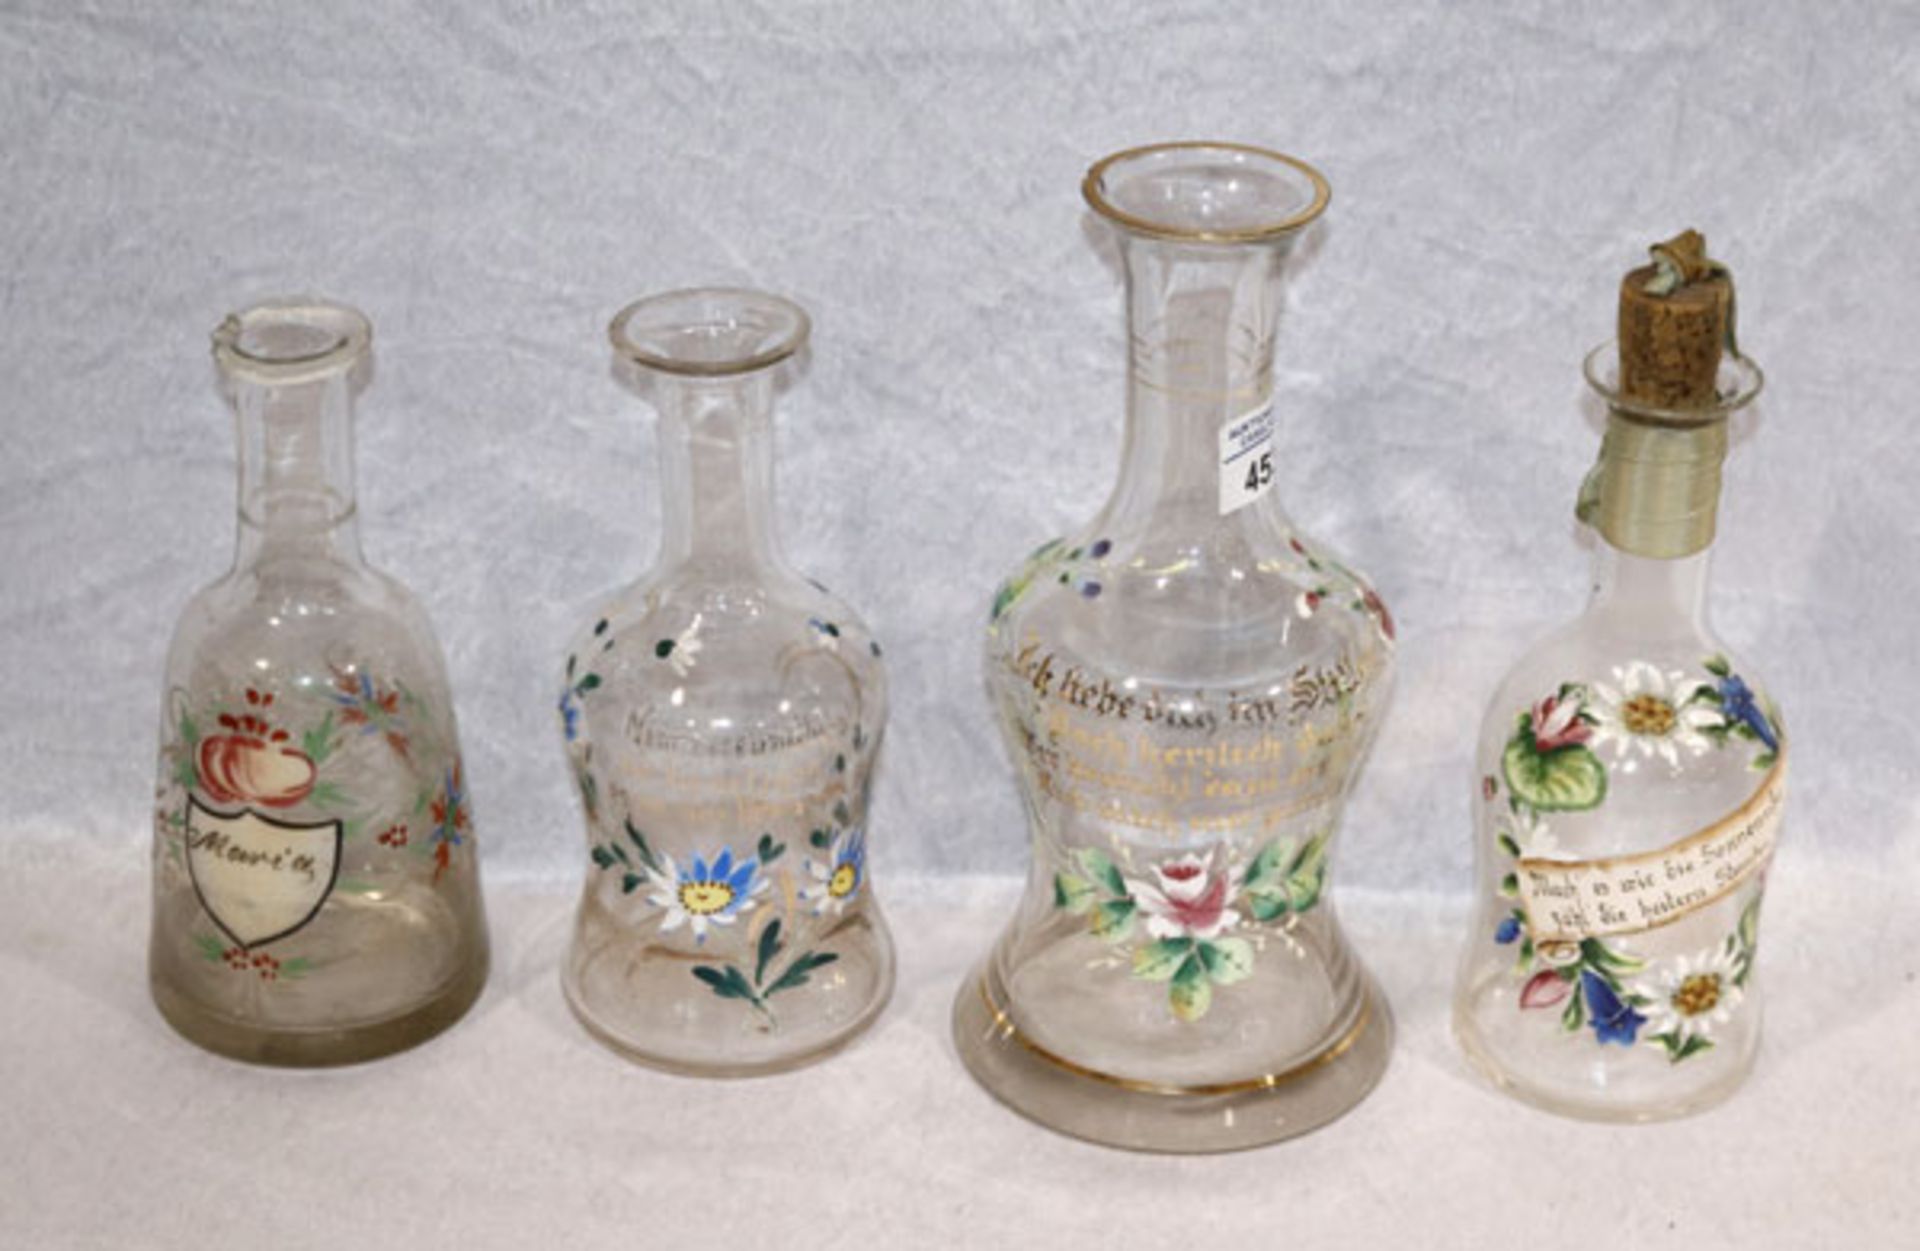 Konvolut von 4 Glasflaschen mit Blumenbemalung, 19. Jahrhundert, ohne Stöpsel, H 19/25 cm, teils